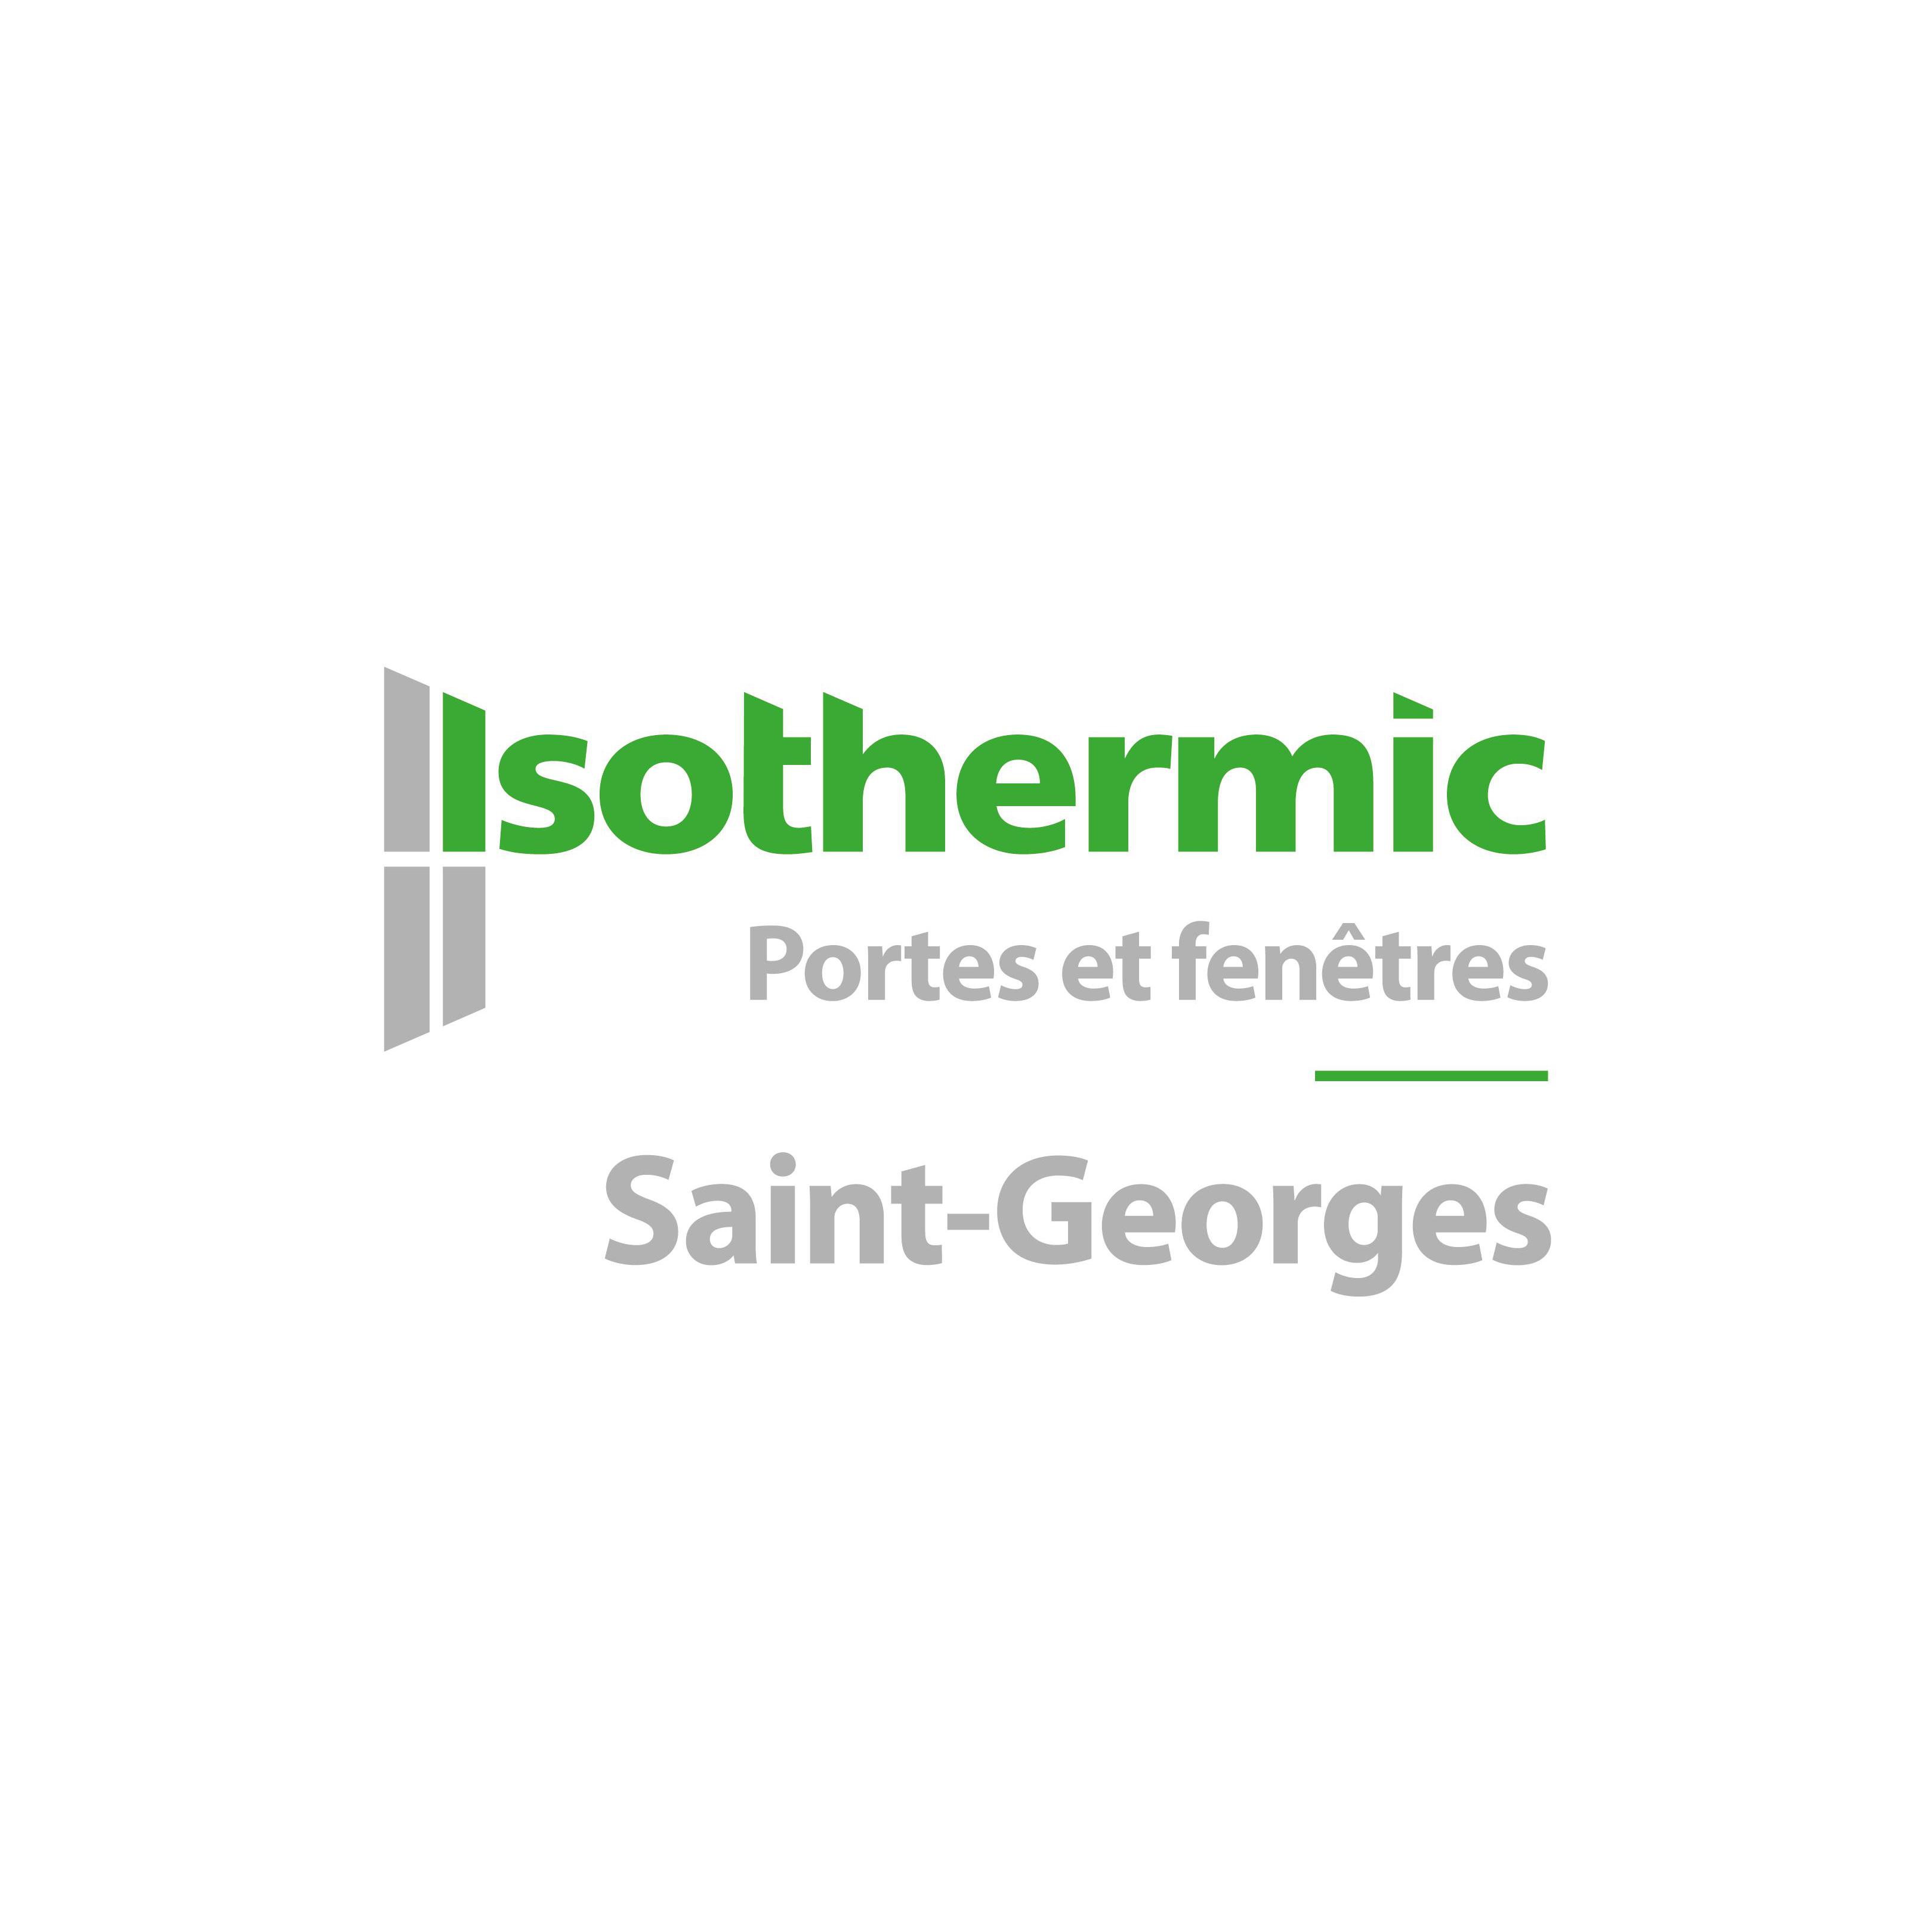 Isothermic portes et fenêtres | Saint-Georges CLOSED Logo